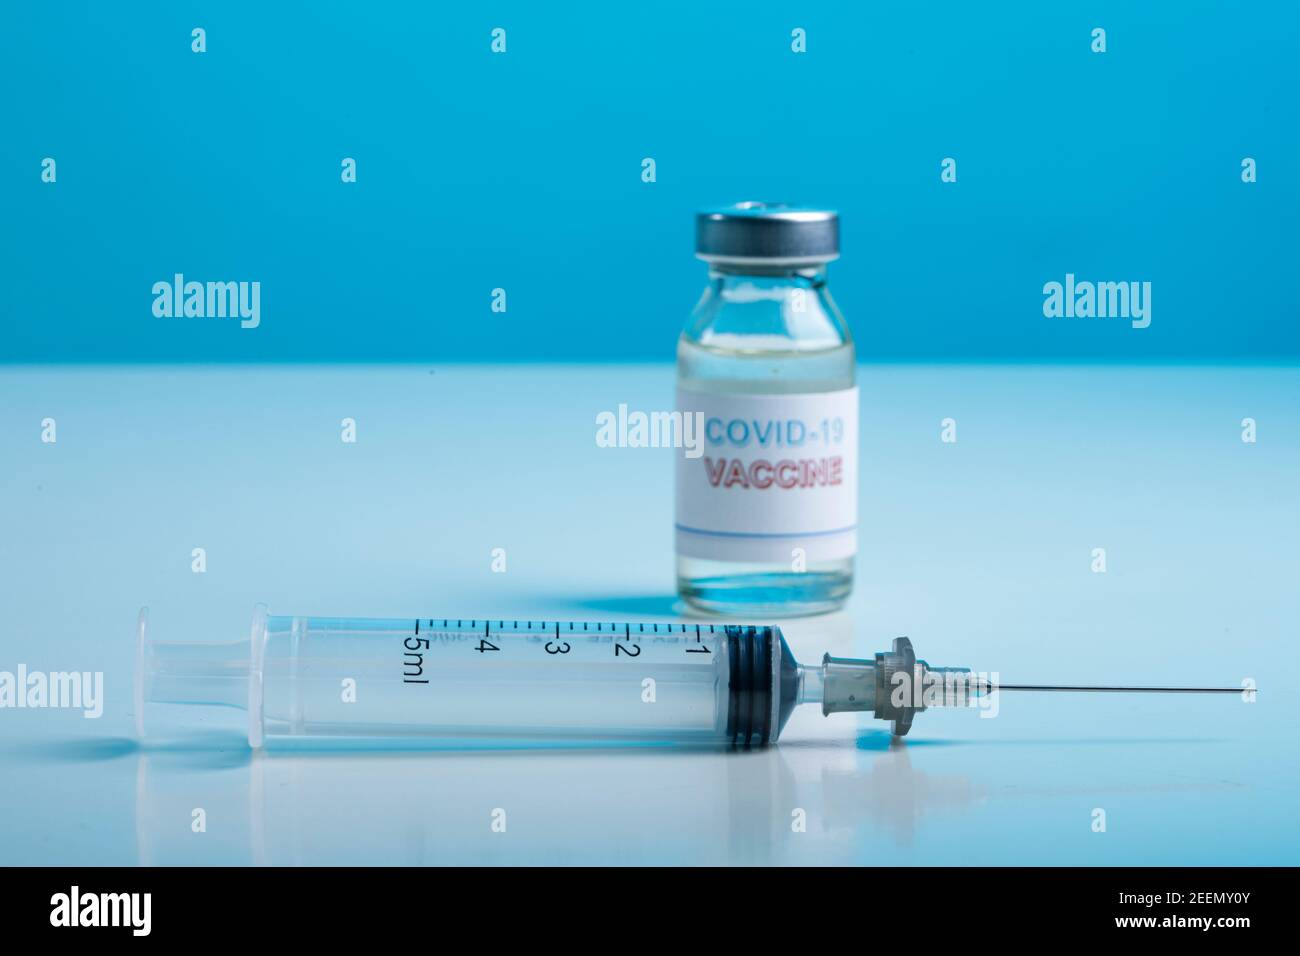 Coronavirus Vaccine Bottle with Syringe, Isolated on Colored Background Stock Photo